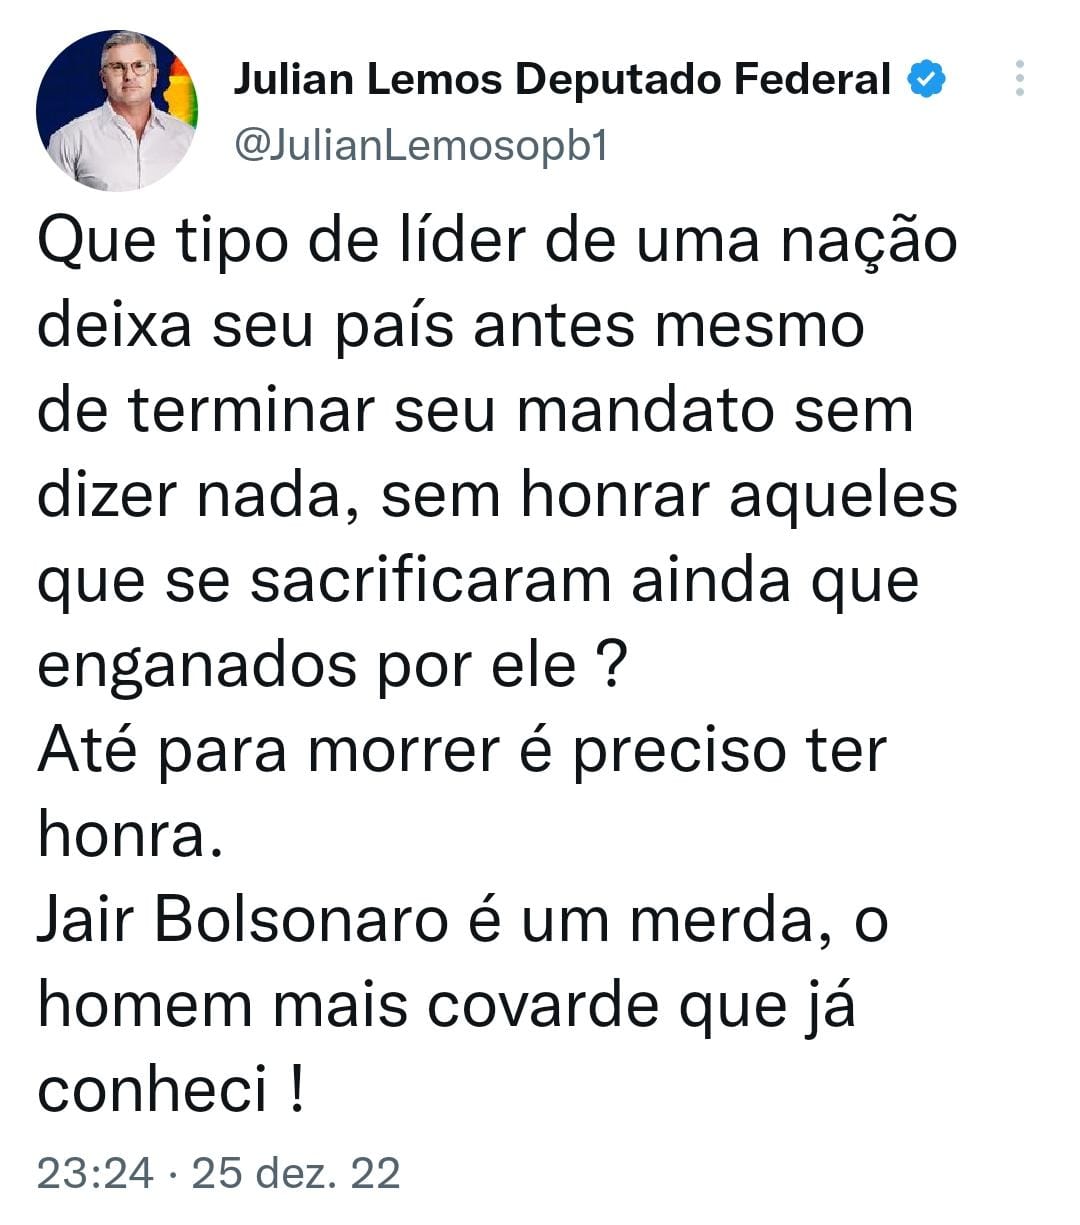 juliantweet - Ex-aliado de Bolsonaro, Julian Lemos critica atuação do presidente no fim do mandato: "Jair Bolsonaro é um m****" - CONFIRA